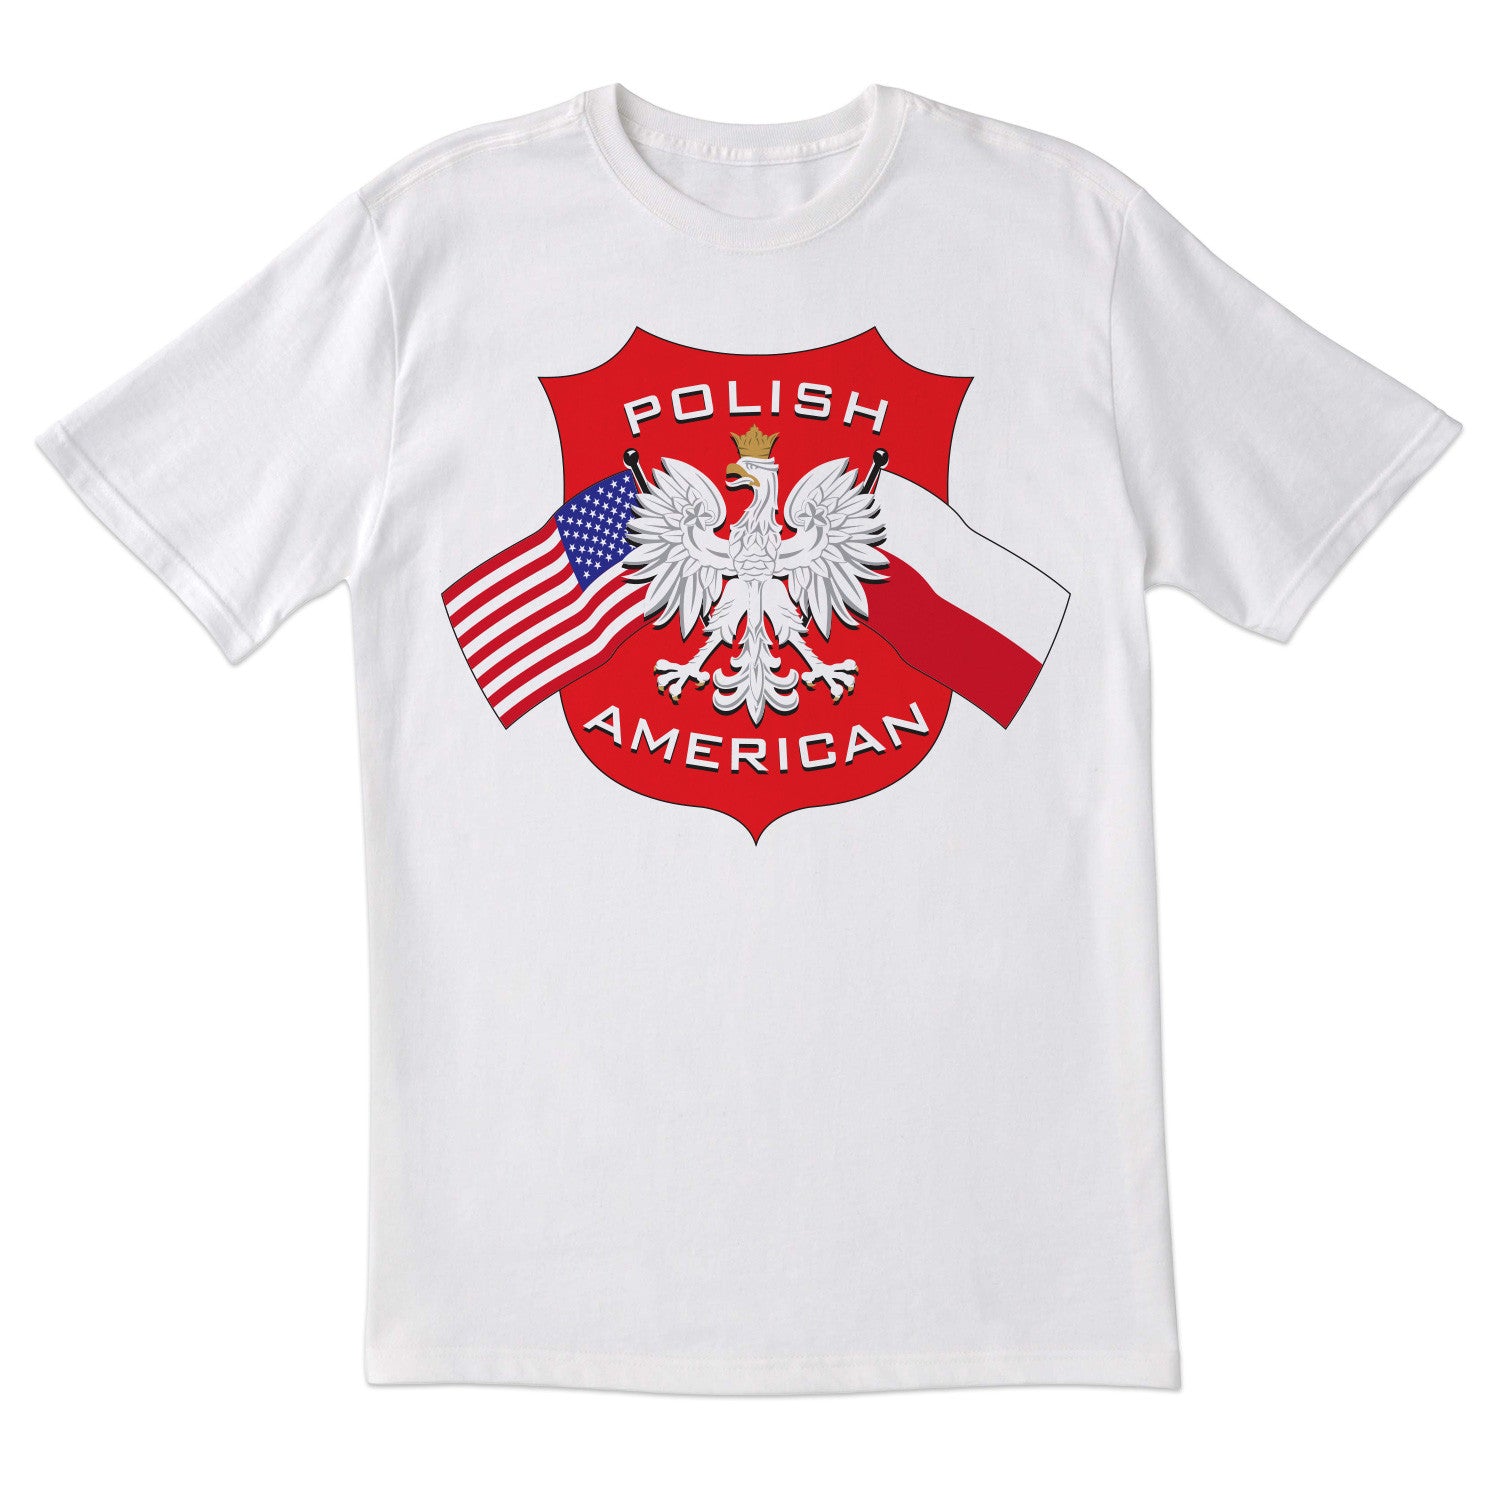 Polish American Short Sleeve Tshirt